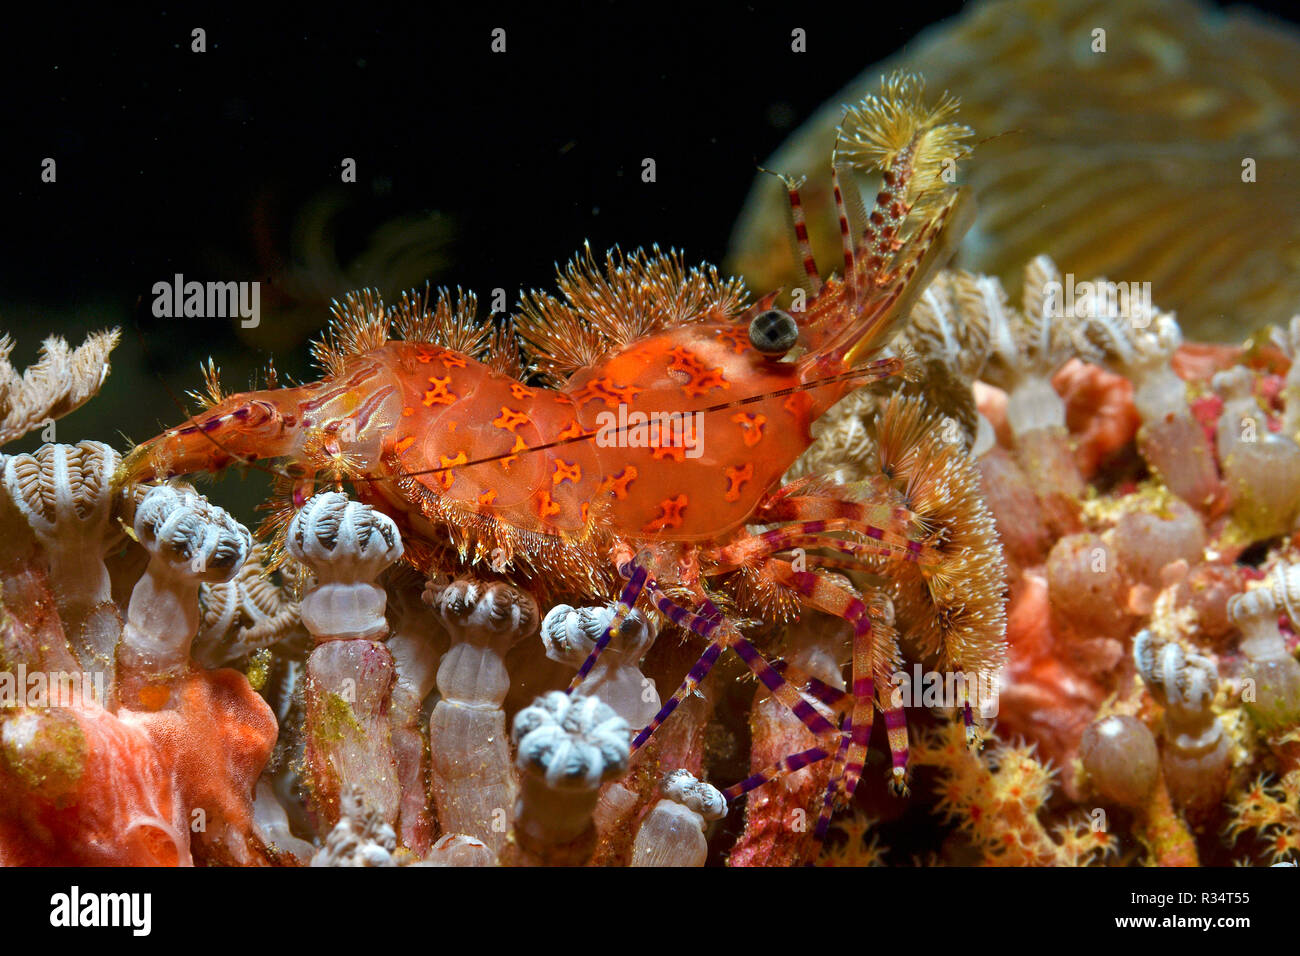 Marble shrimp (Saron marmoratus), Witu, West New Britain, Papua New Guinea, Pacific Ocean Stock Photo